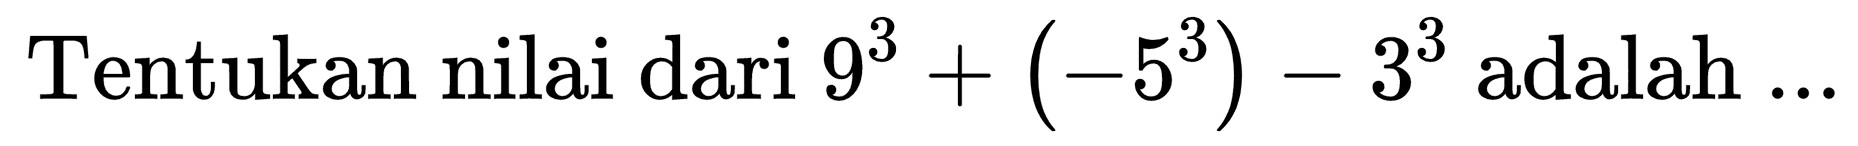 Tentukan nilai dari  9^(3)+(-5^(3))-3^(3)  adalah  ...